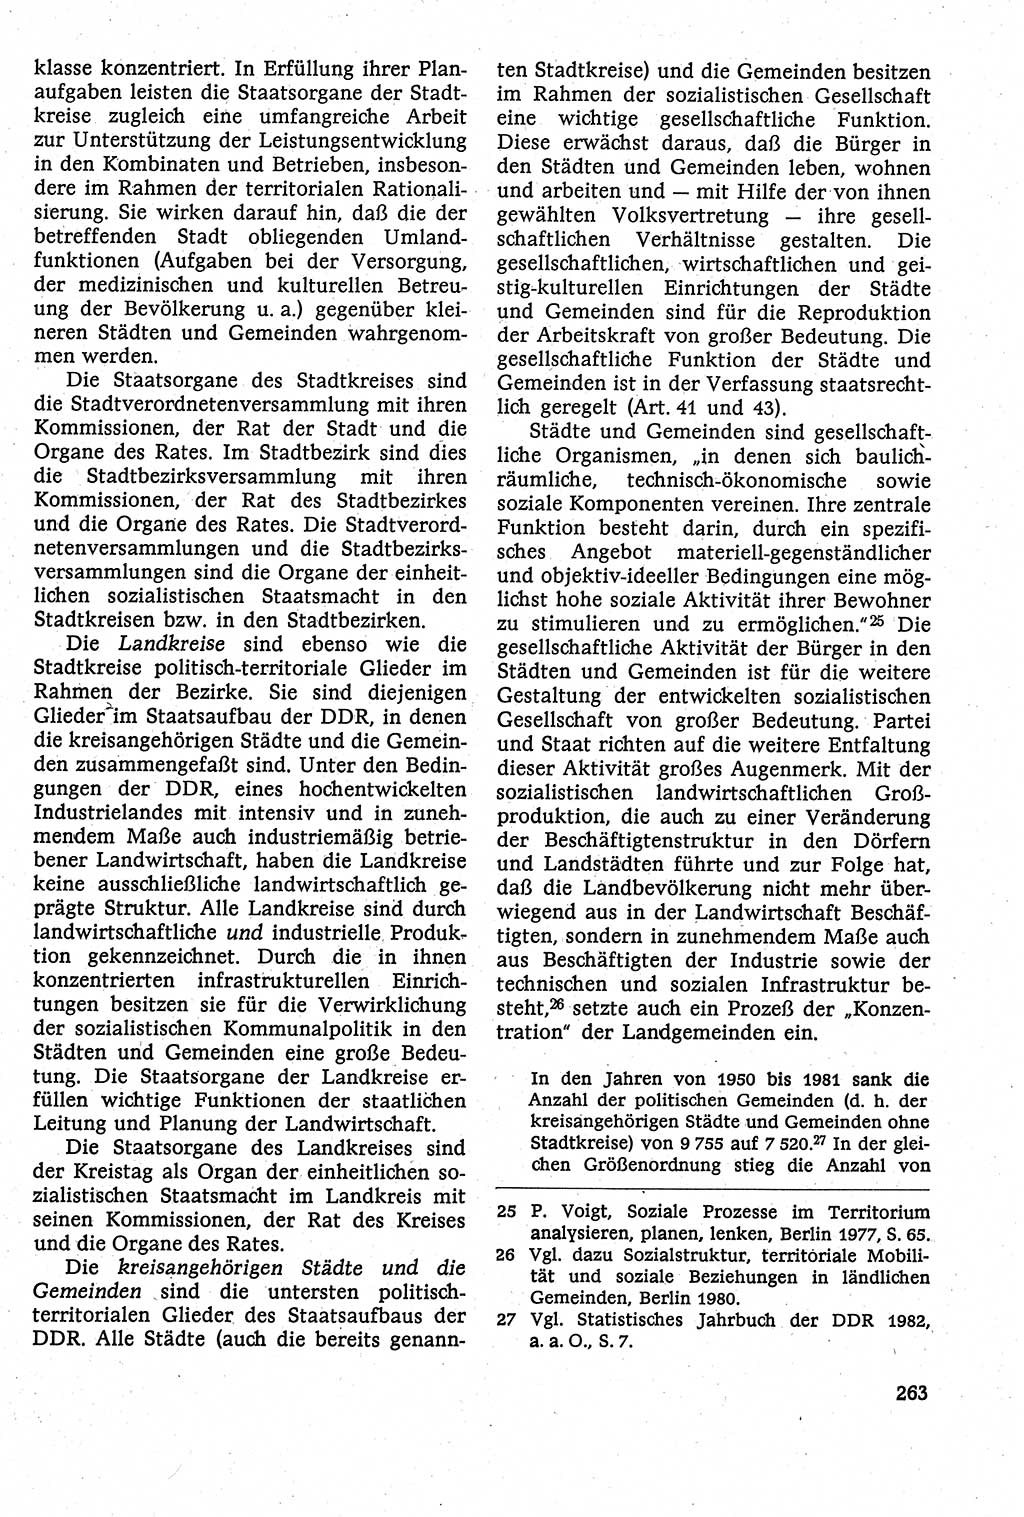 Staatsrecht der DDR [Deutsche Demokratische Republik (DDR)], Lehrbuch 1984, Seite 263 (St.-R. DDR Lb. 1984, S. 263)